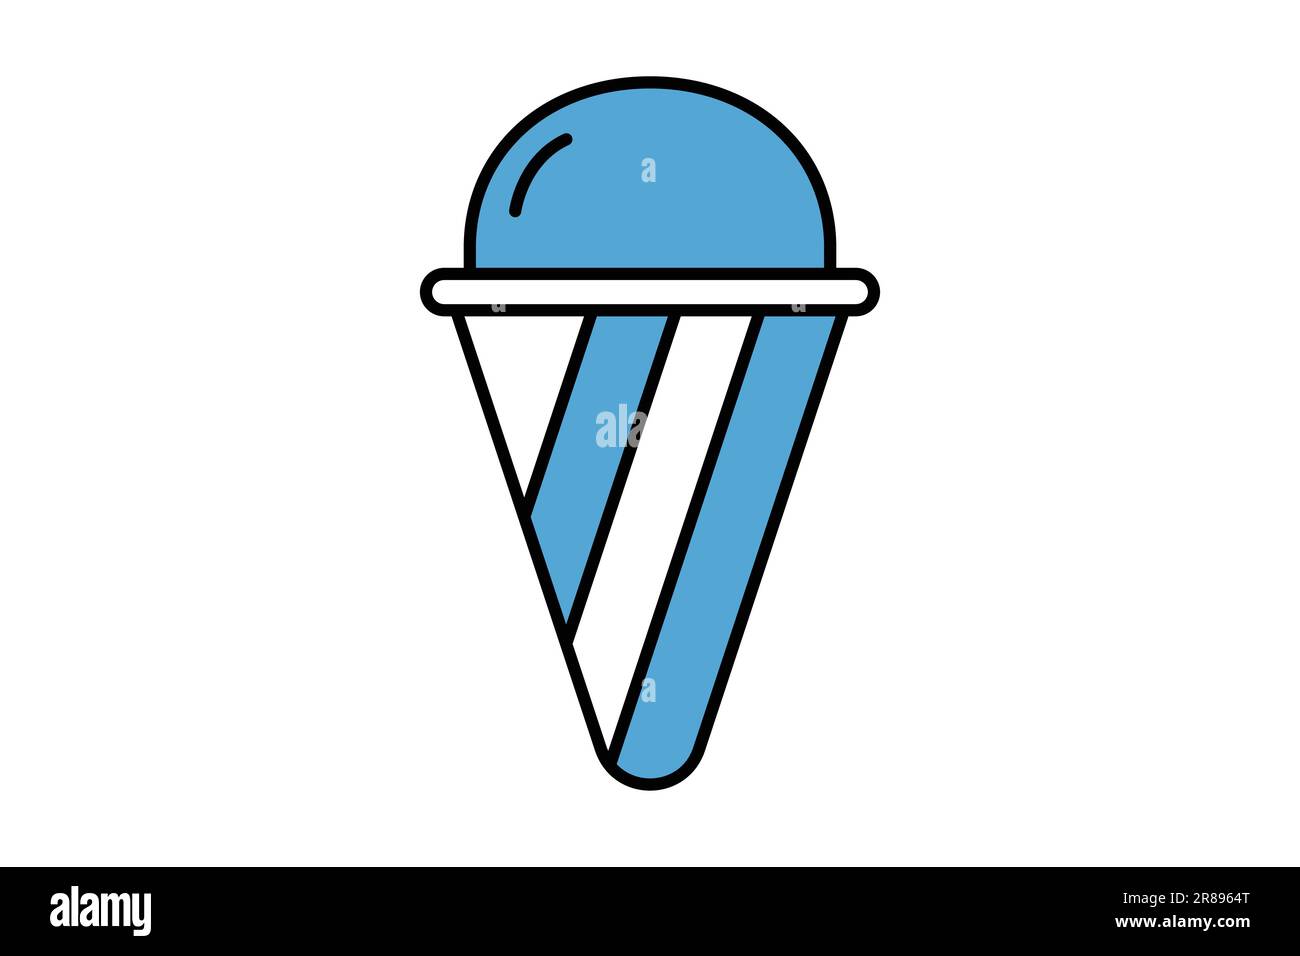 ice cream icon. Two tone icon style design. Simple vector design editable Stock Vector